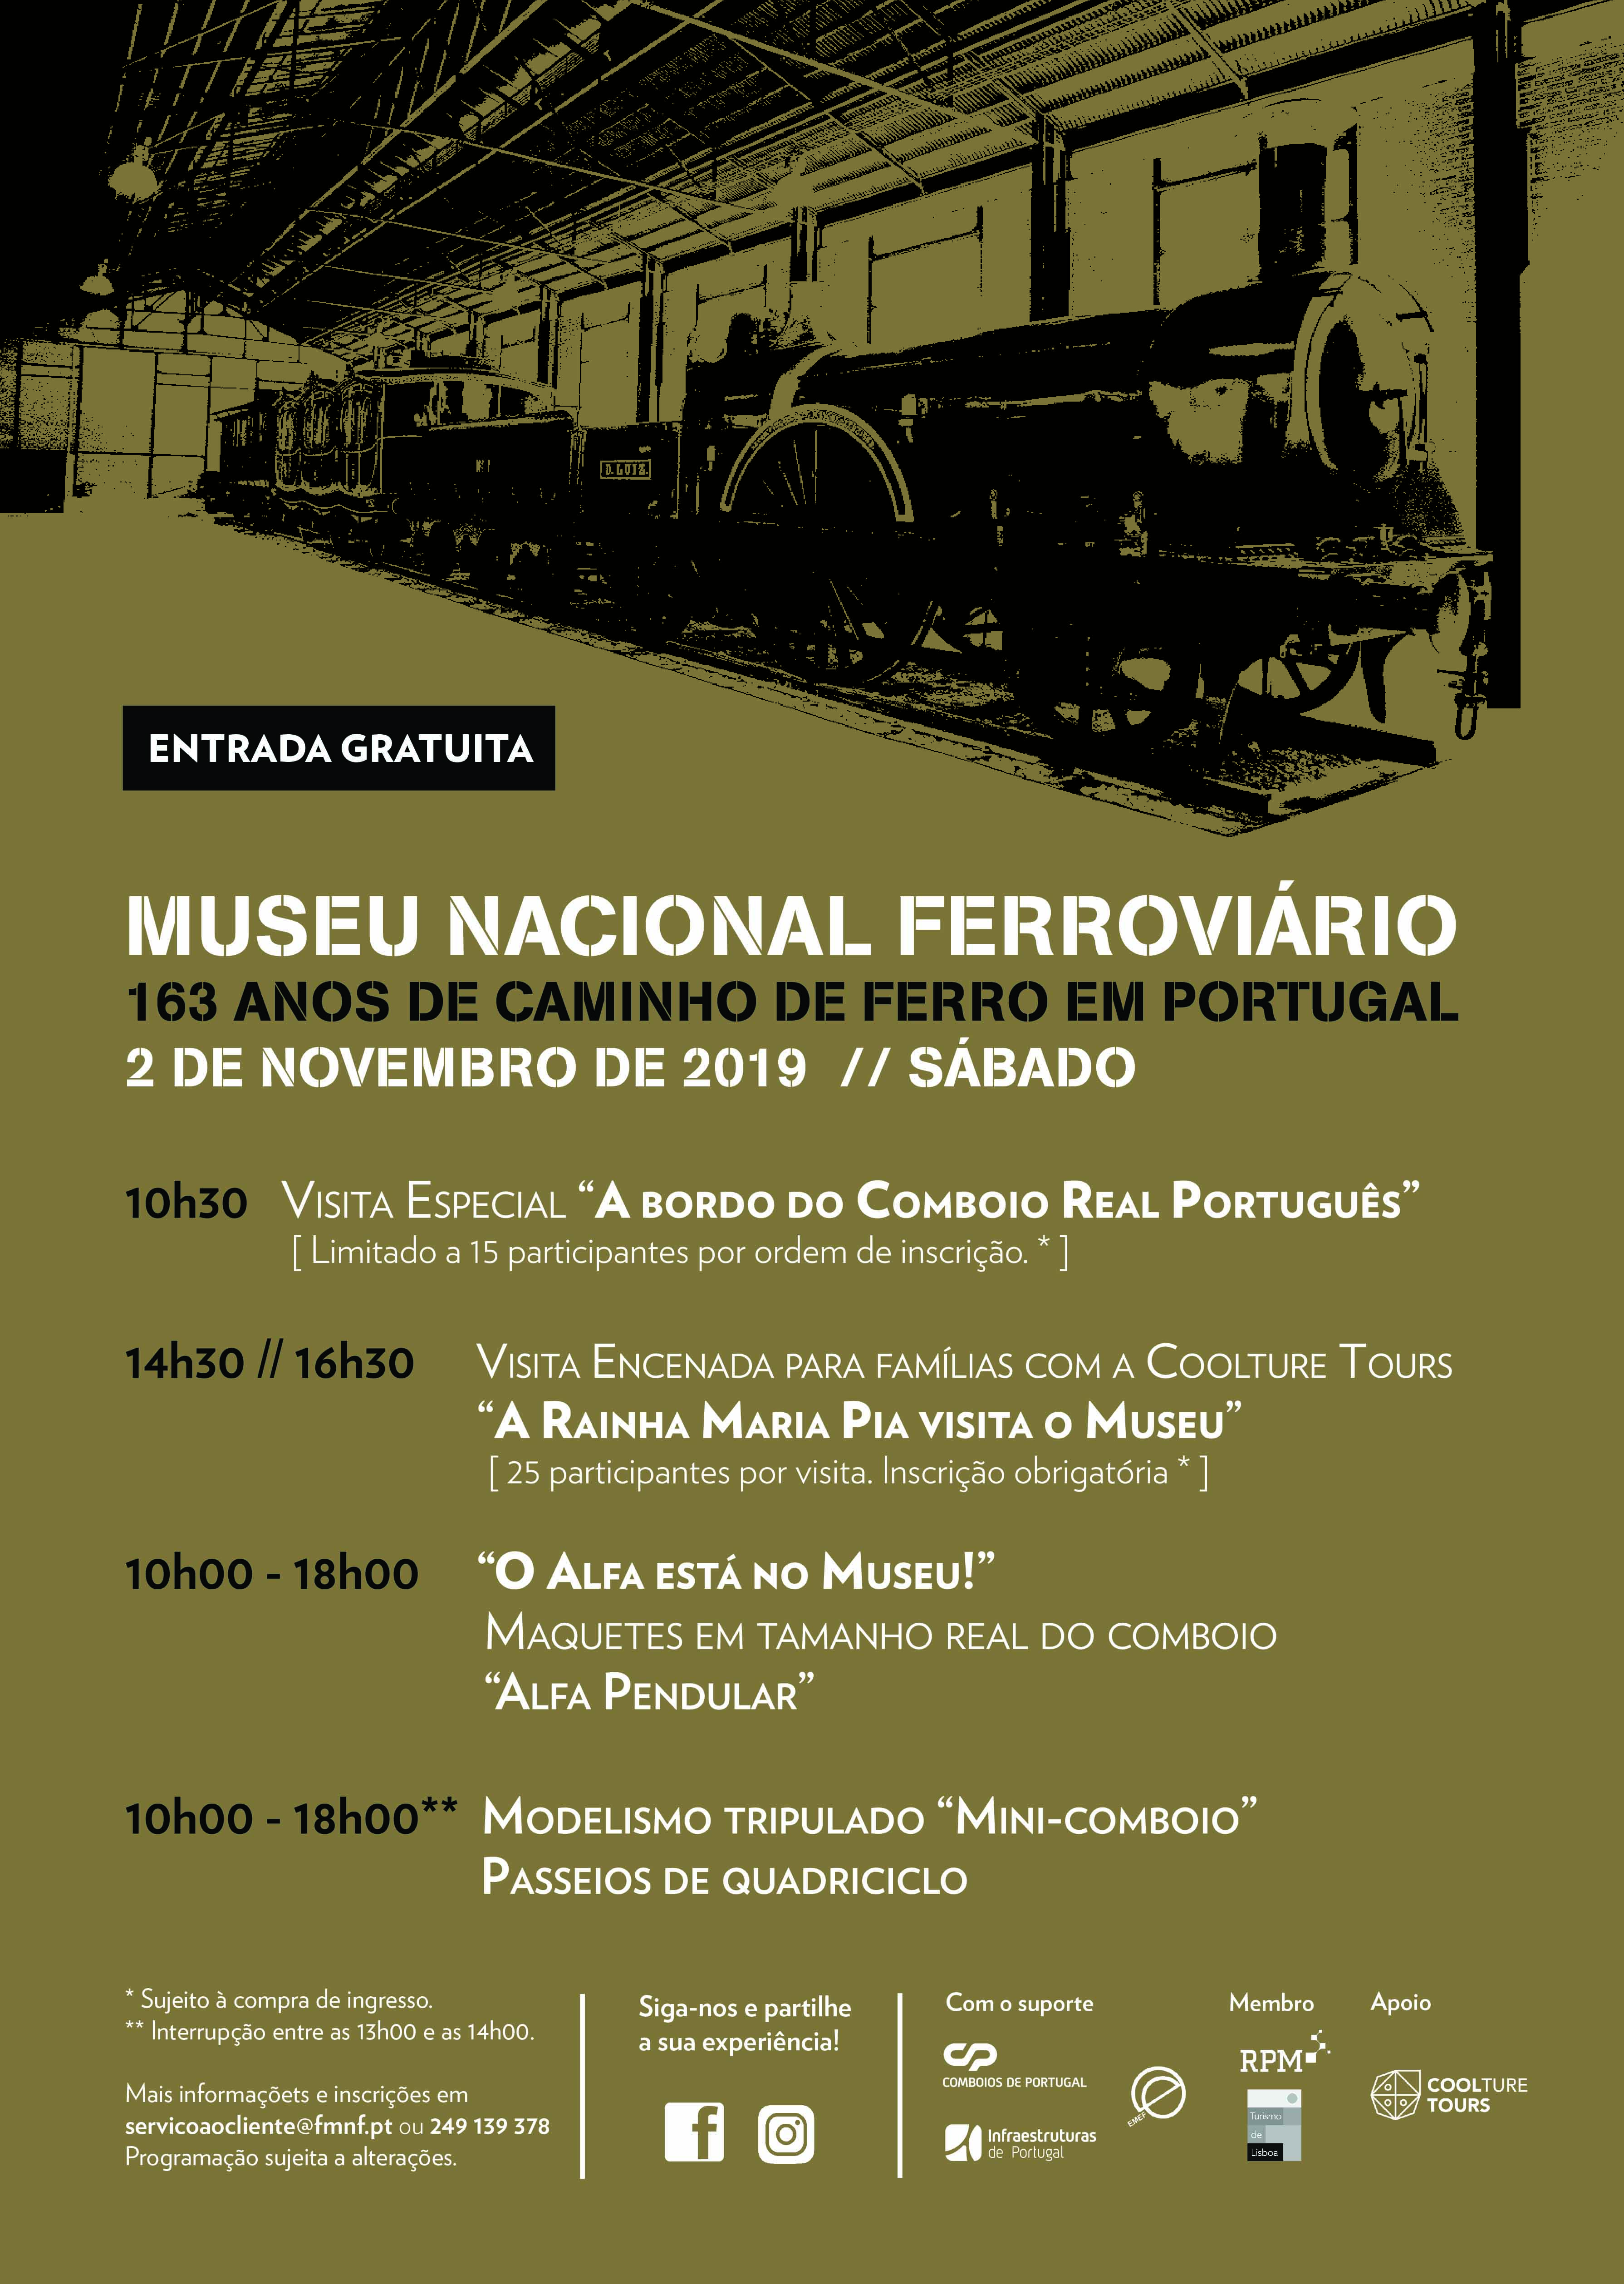 Museu Nacional Ferroviário celebra o Aniversário do Caminho de Ferro em Portugal com Programação Especial